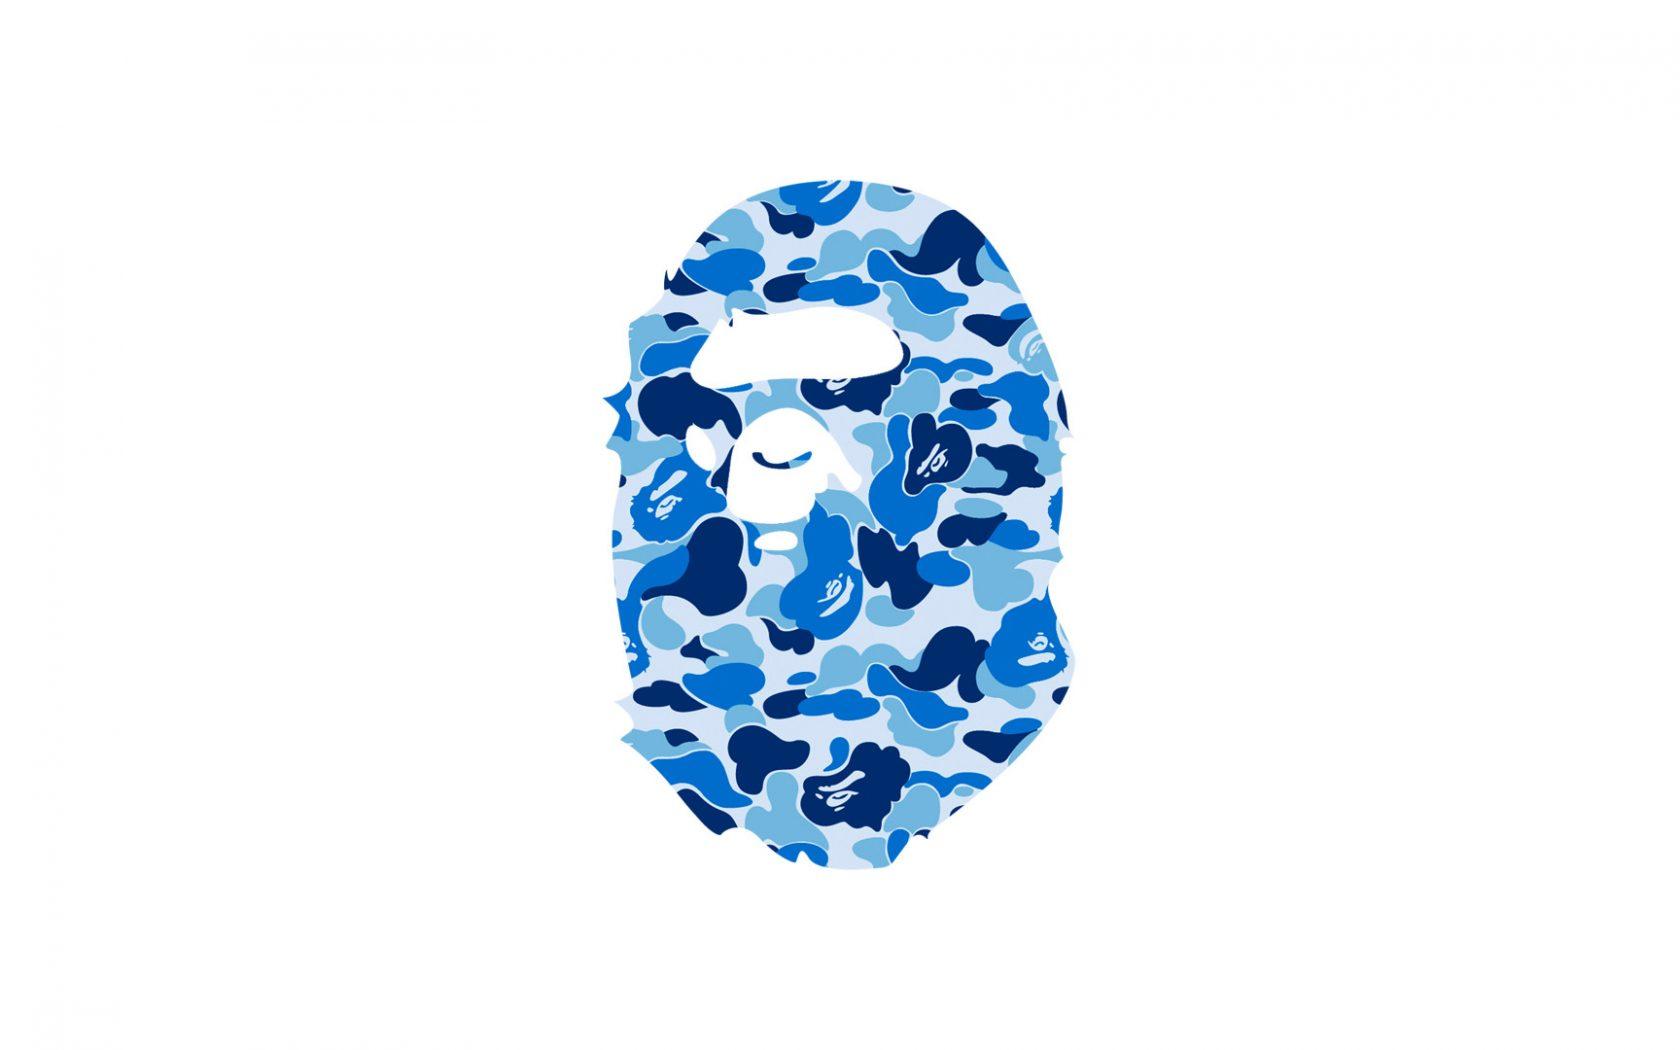 Cool BAPE Logo - Cool Bathing Ape Logo Wallpaper In Plain White Background